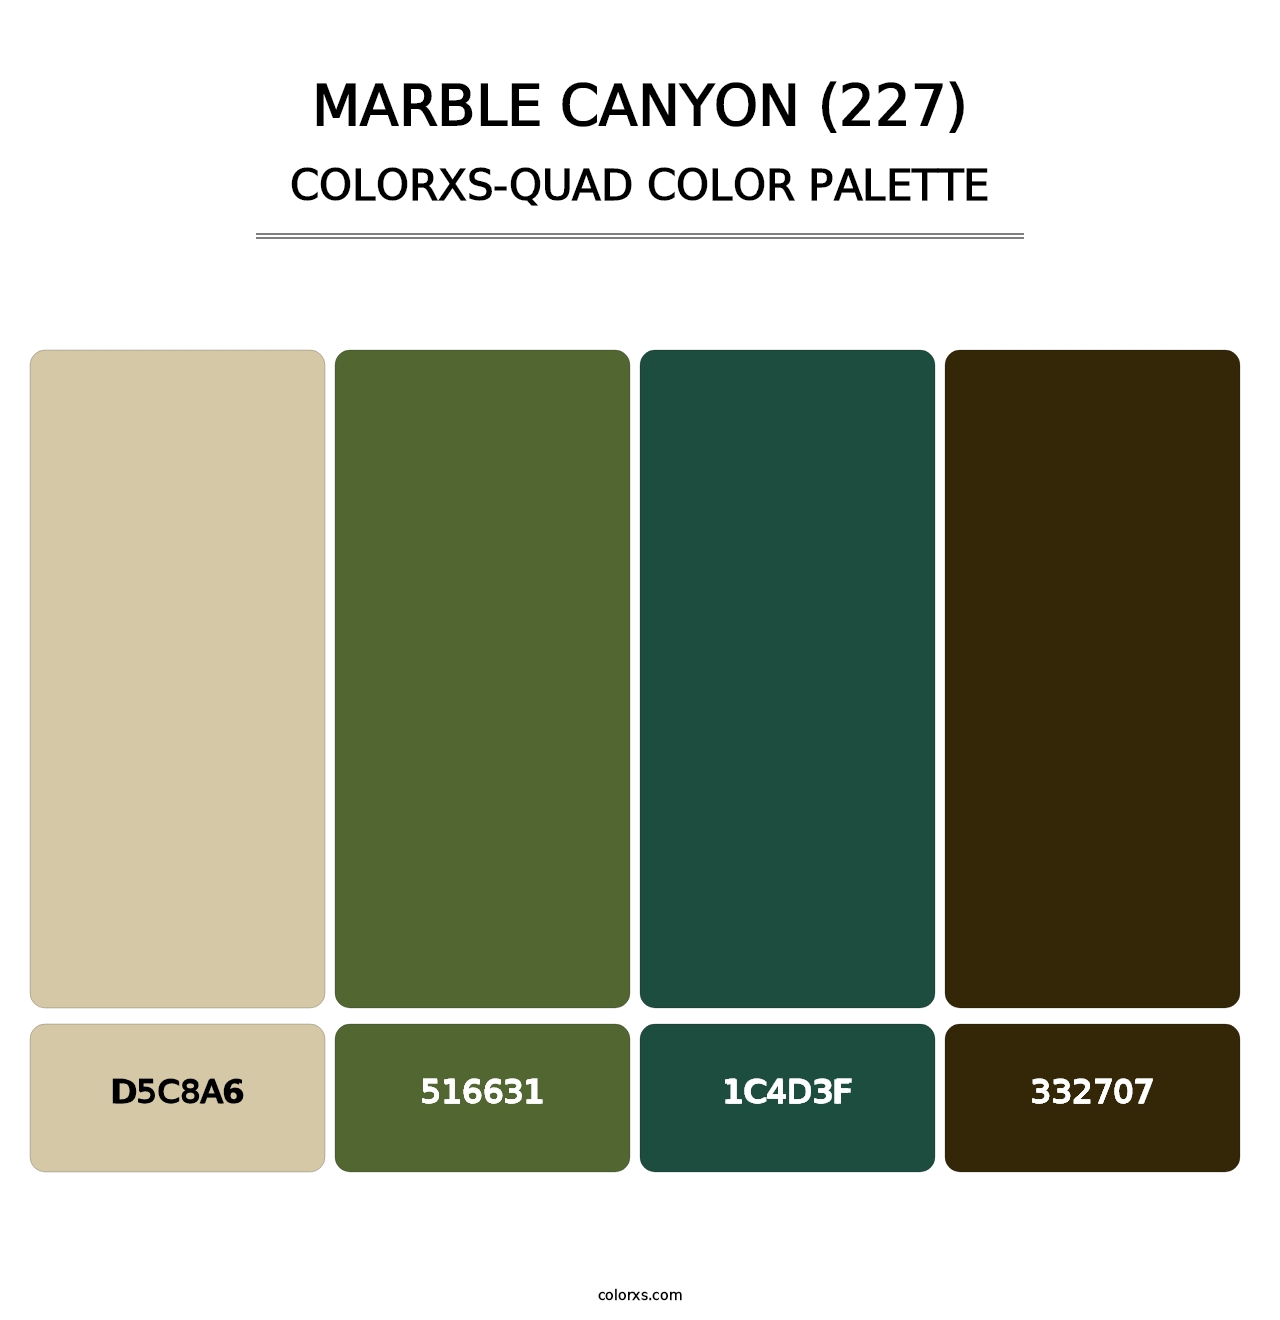 Marble Canyon (227) - Colorxs Quad Palette